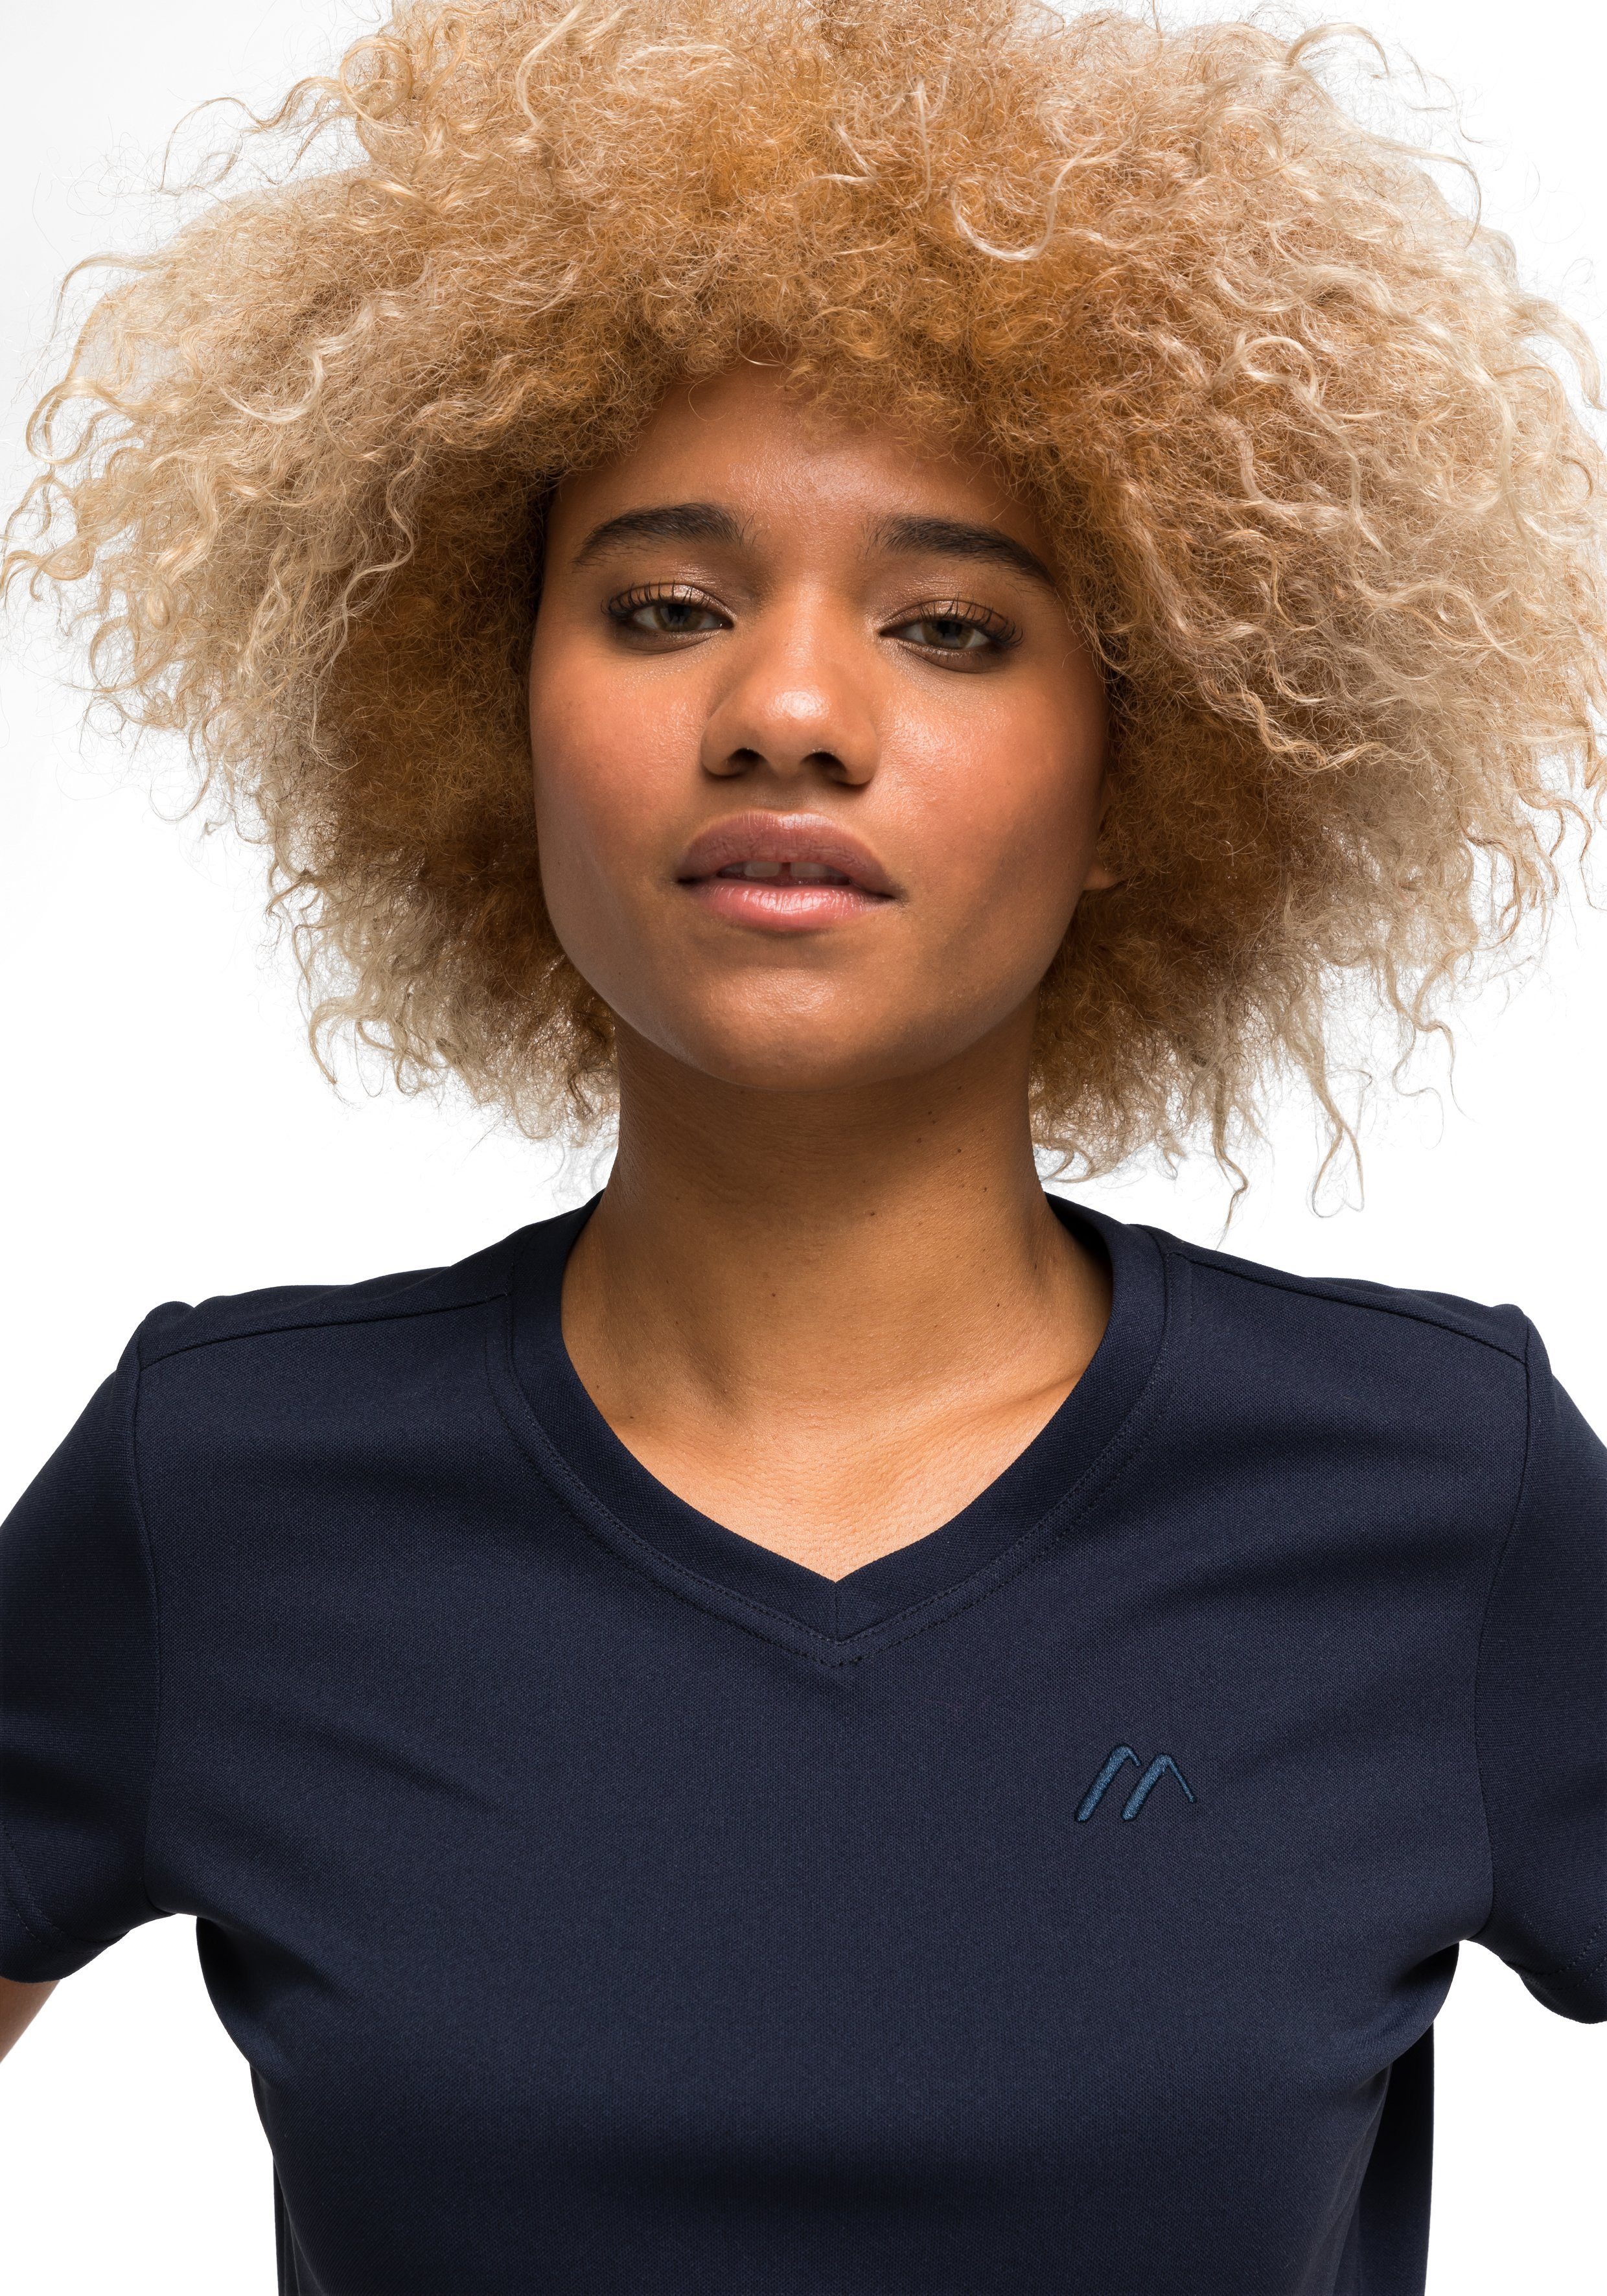 Maier Sports Funktionsshirt Trudy Damen und für T-Shirt, dunkelblau Kurzarmshirt Freizeit Wandern